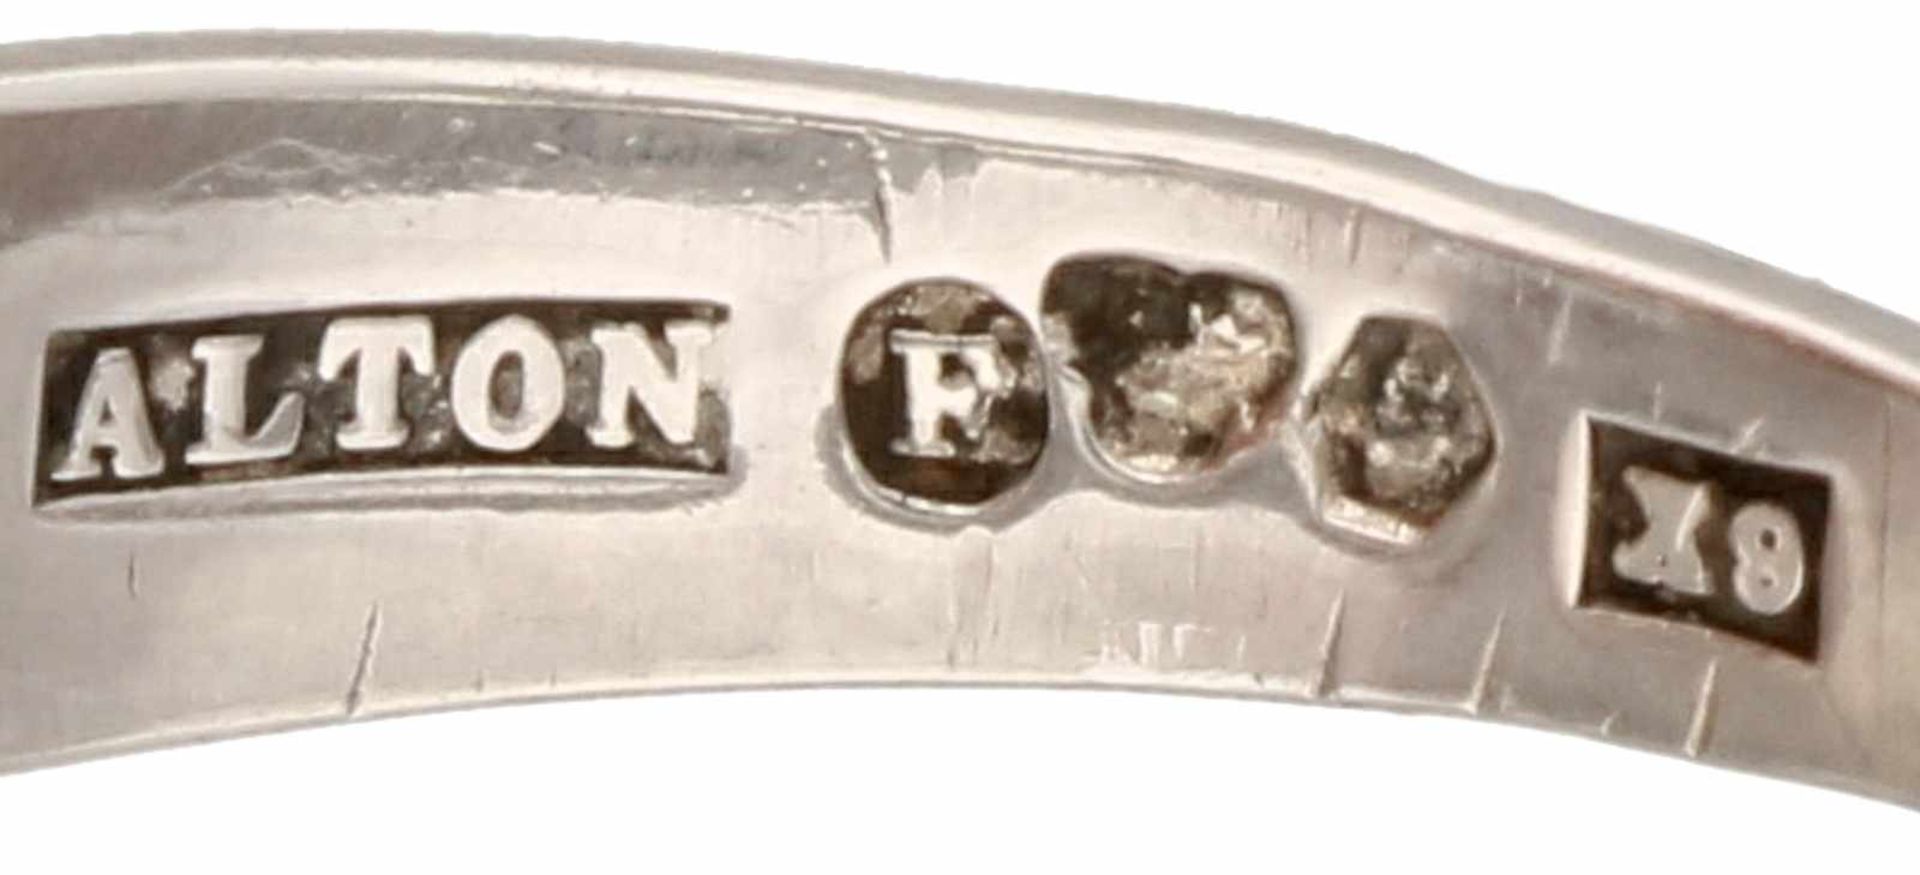 Zilveren Alton ring - 925/1000.Zweden, 1972. Ring is verstelbaar. Ringmaat: 17 mm. Gewicht: 3,8 - Bild 3 aus 3